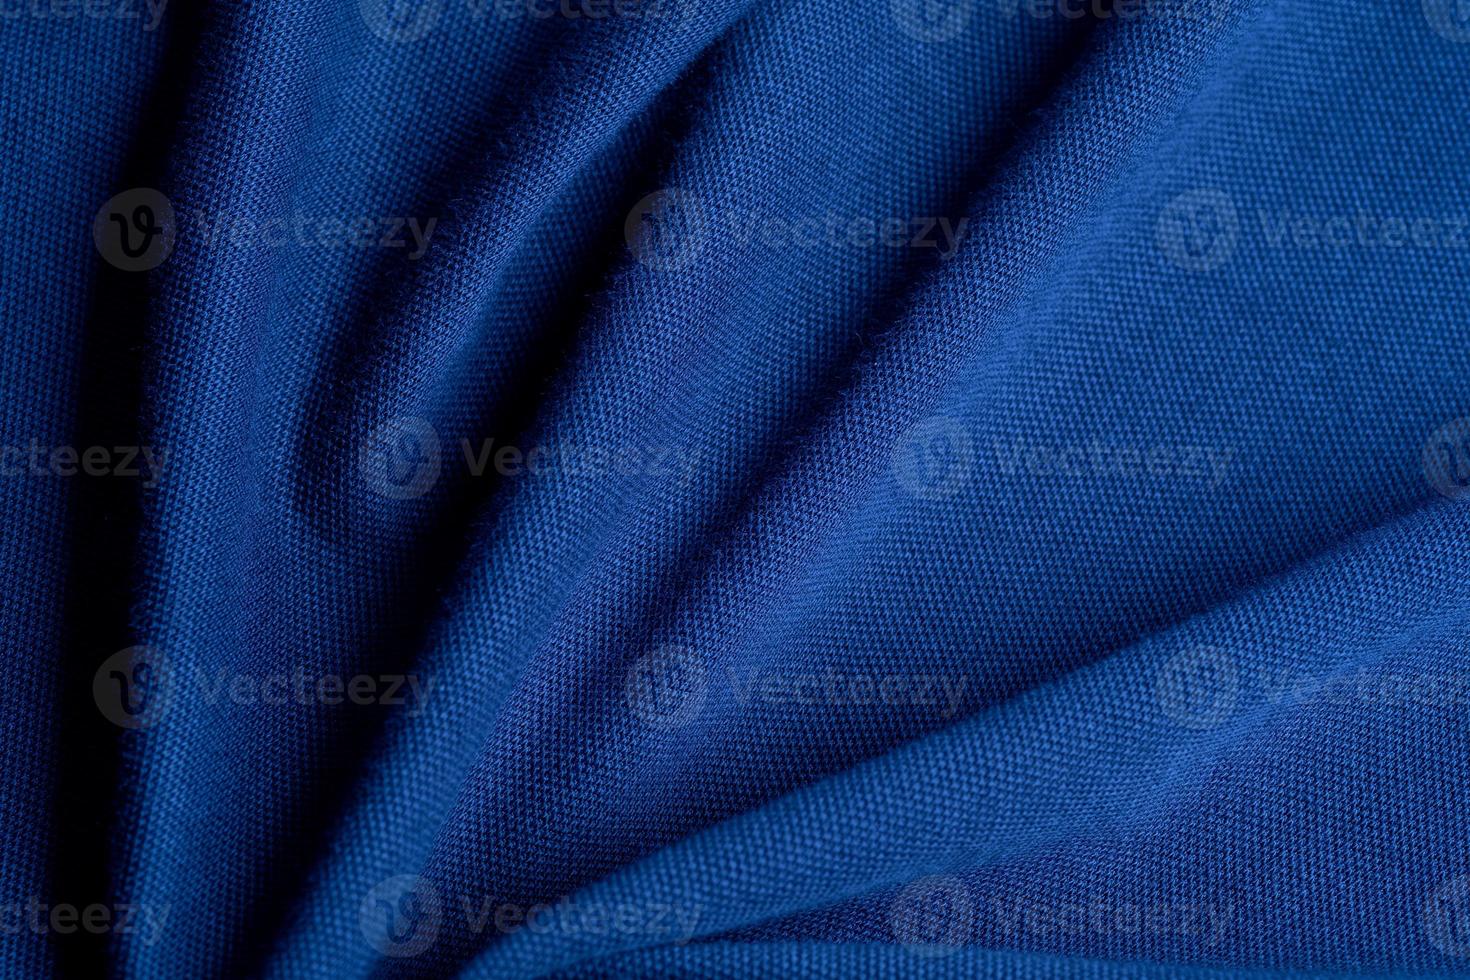 blauwe stof textuur achtergrond, abstract, close-up textuur van doek foto